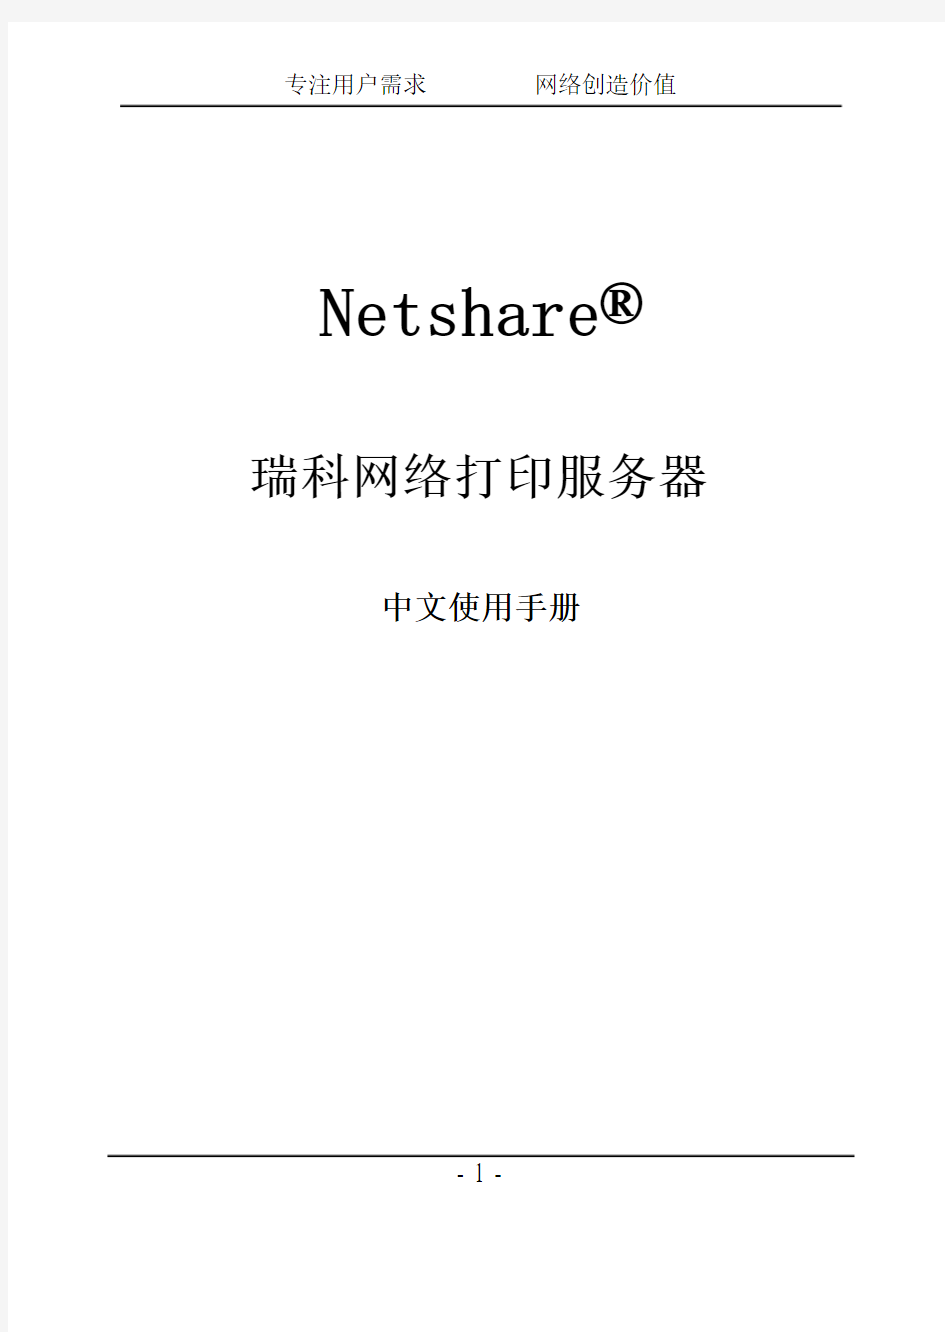 Netshare瑞科打印服务器产品说明书